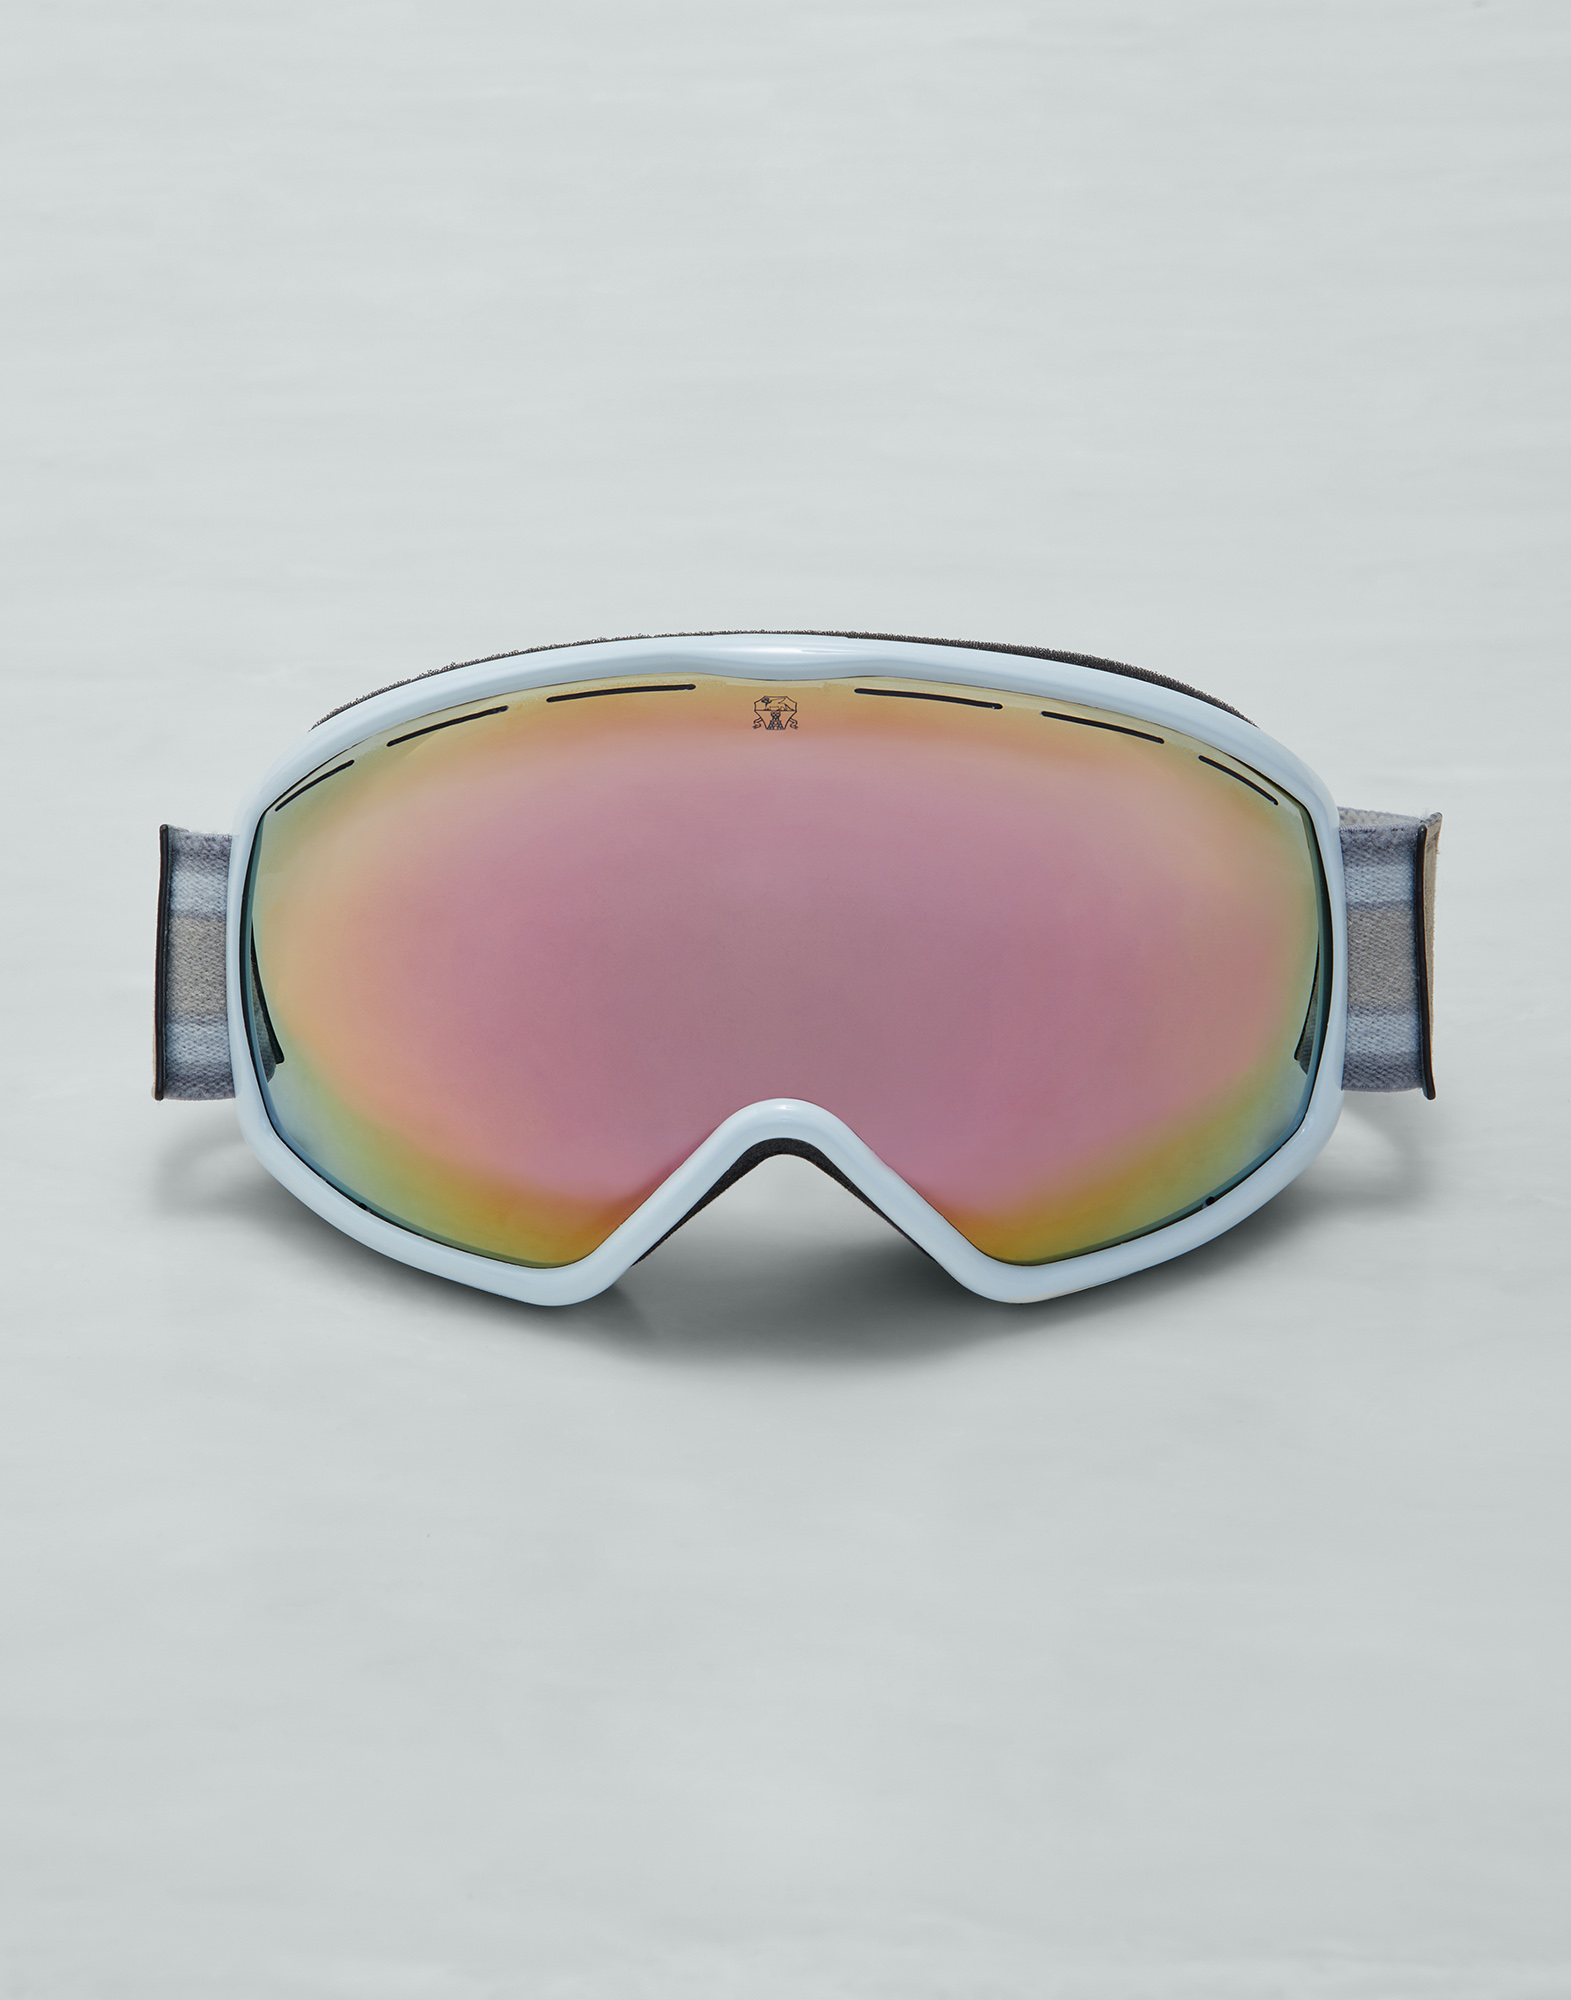 スキーゴーグル - Aspen ホワイト アイウェア - Brunello Cucinelli